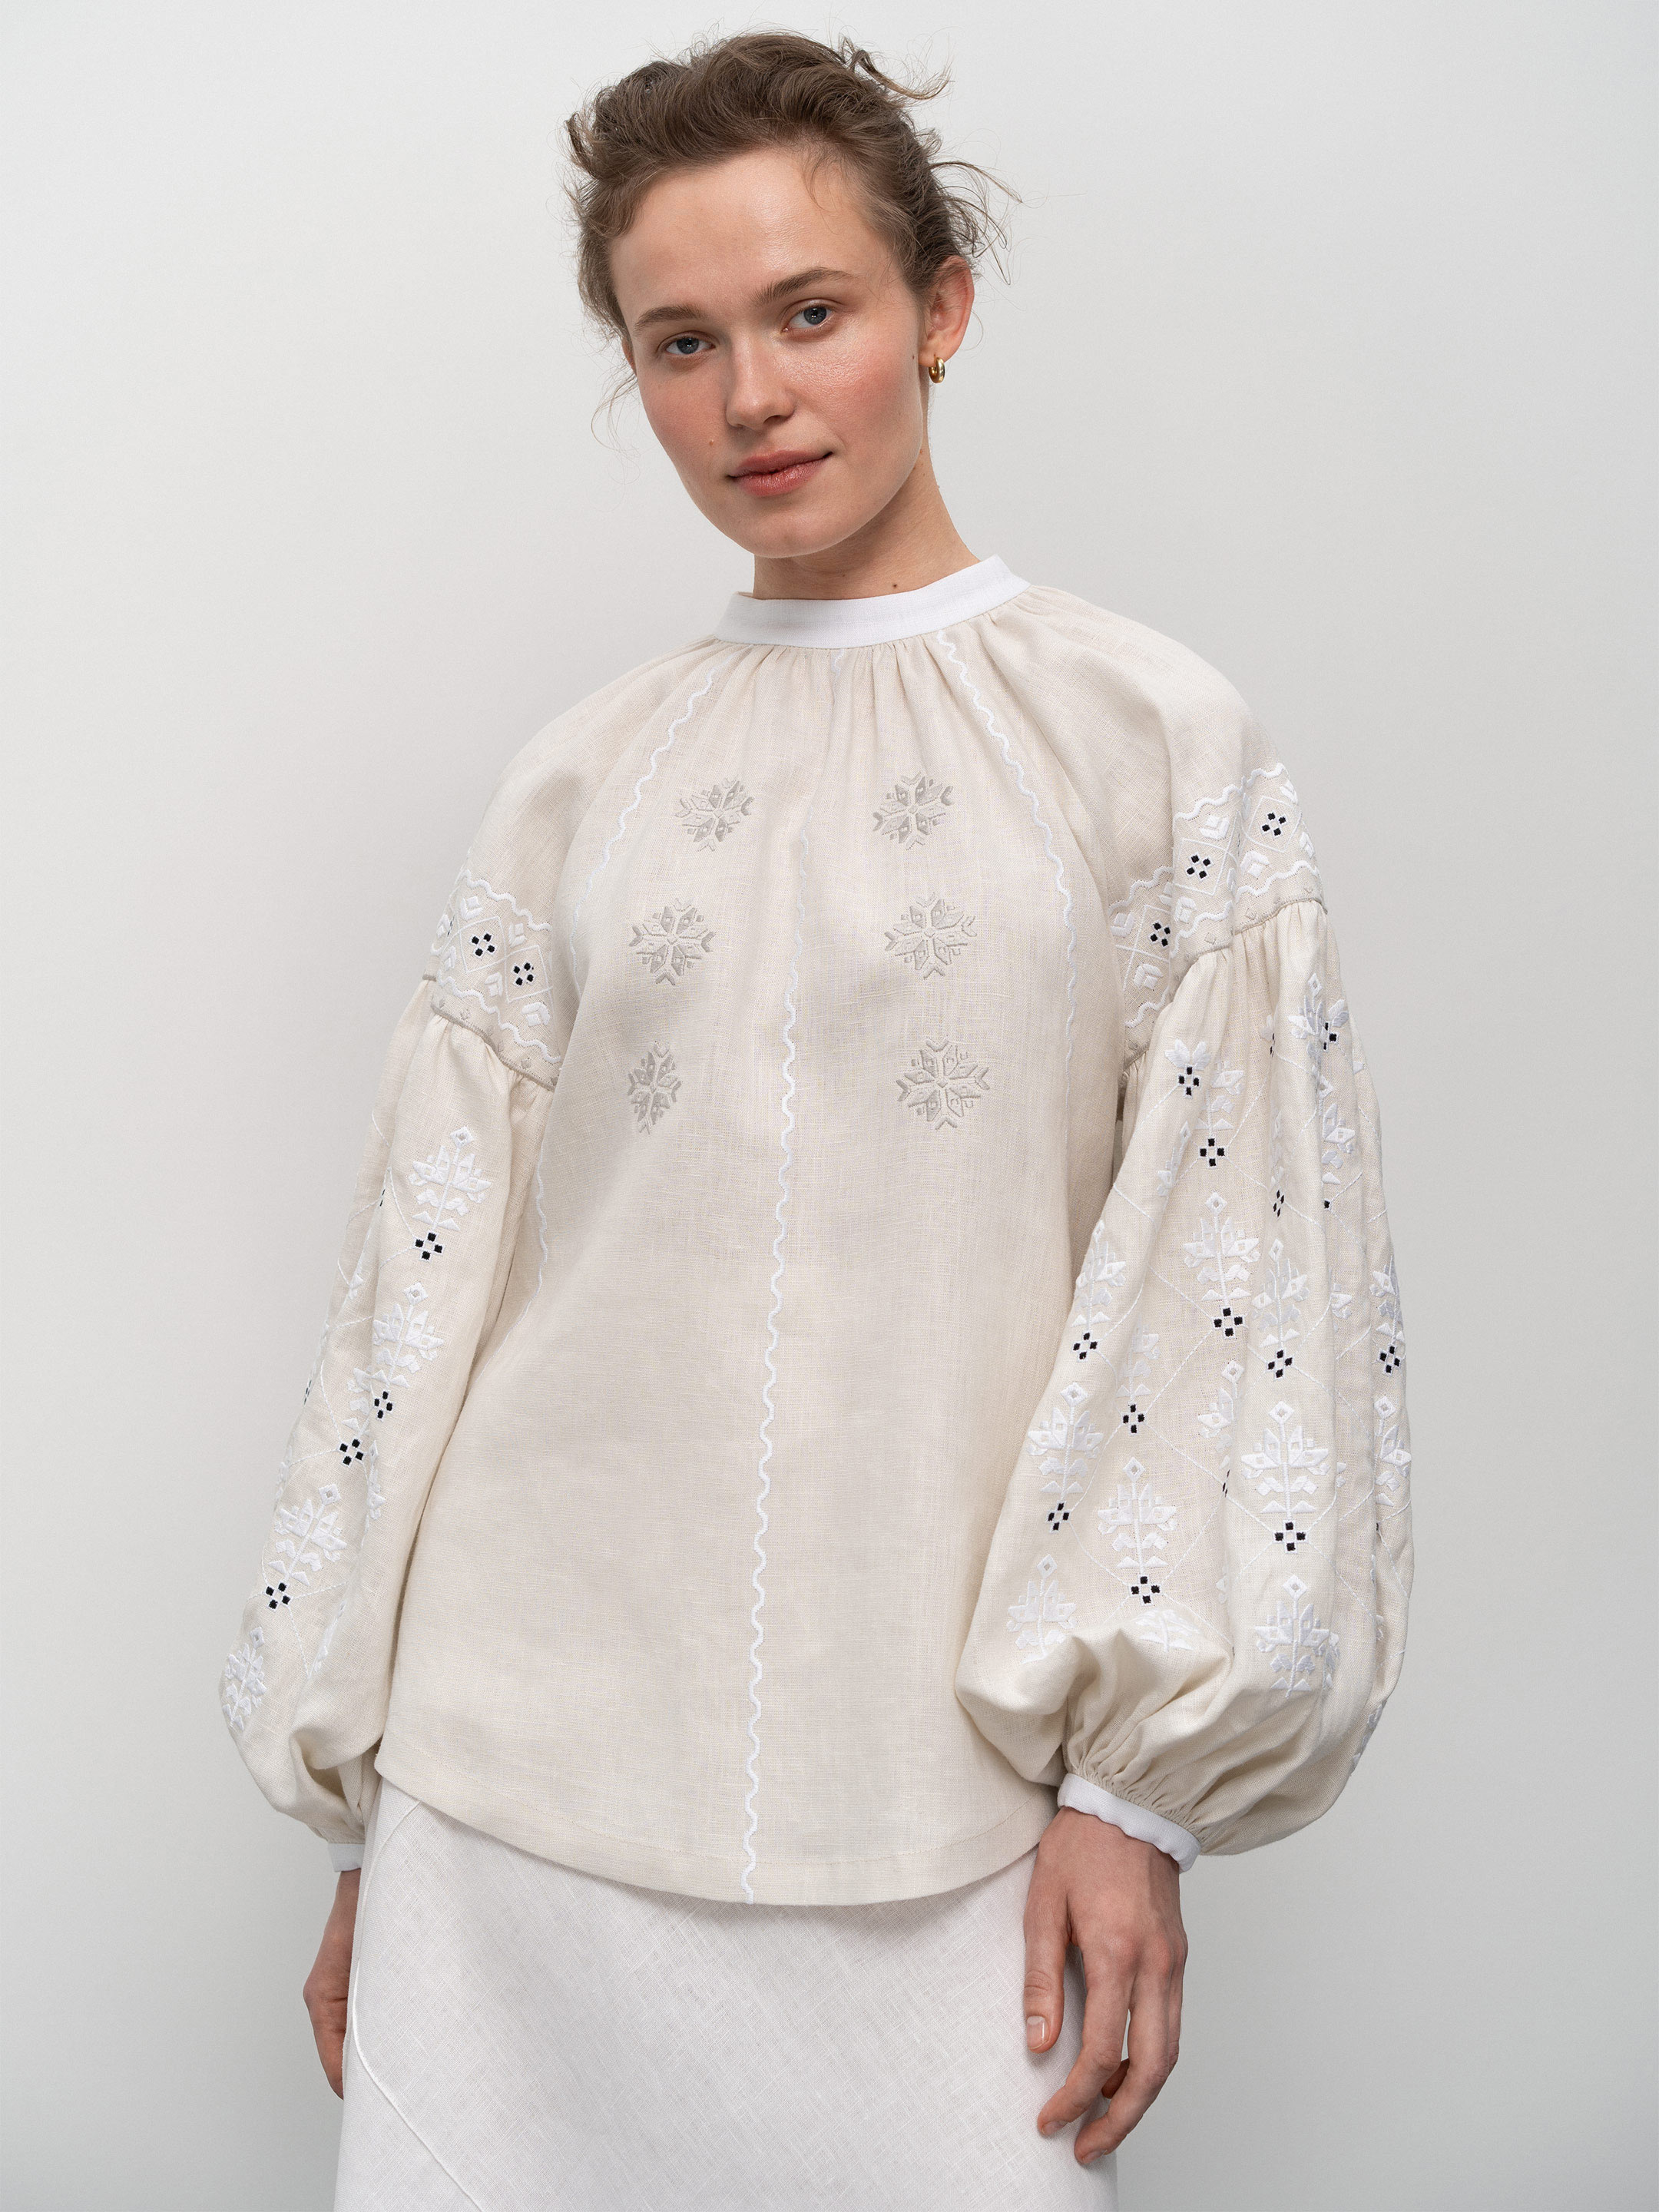 Women's embroidered shirt Poltavska - photo 1